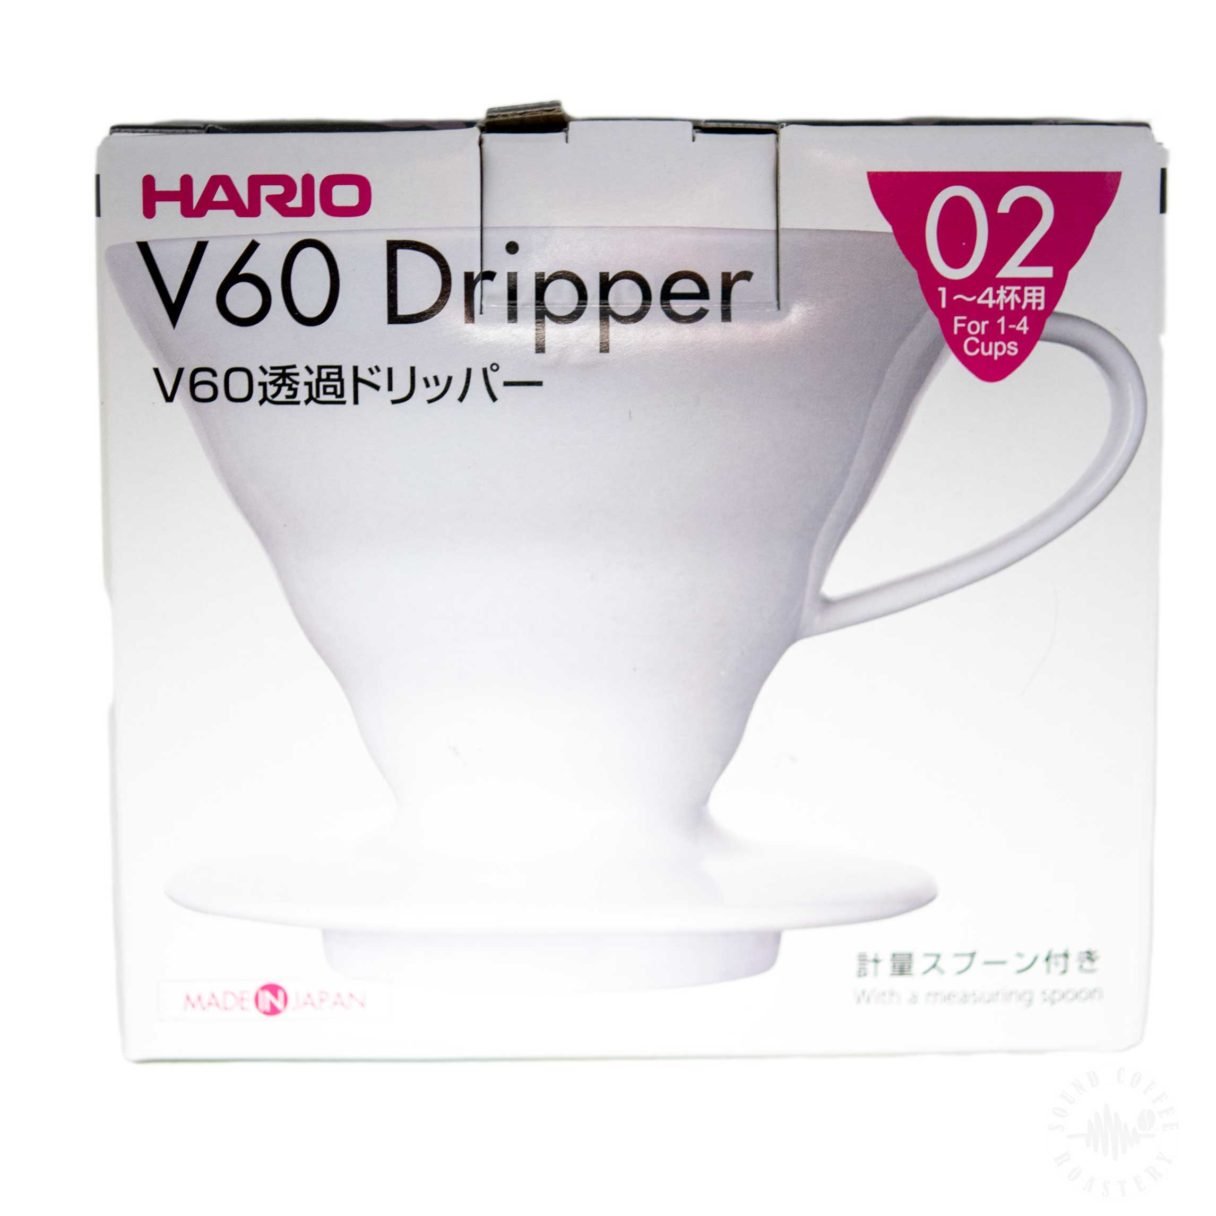 Hario V60 ceramic dripper